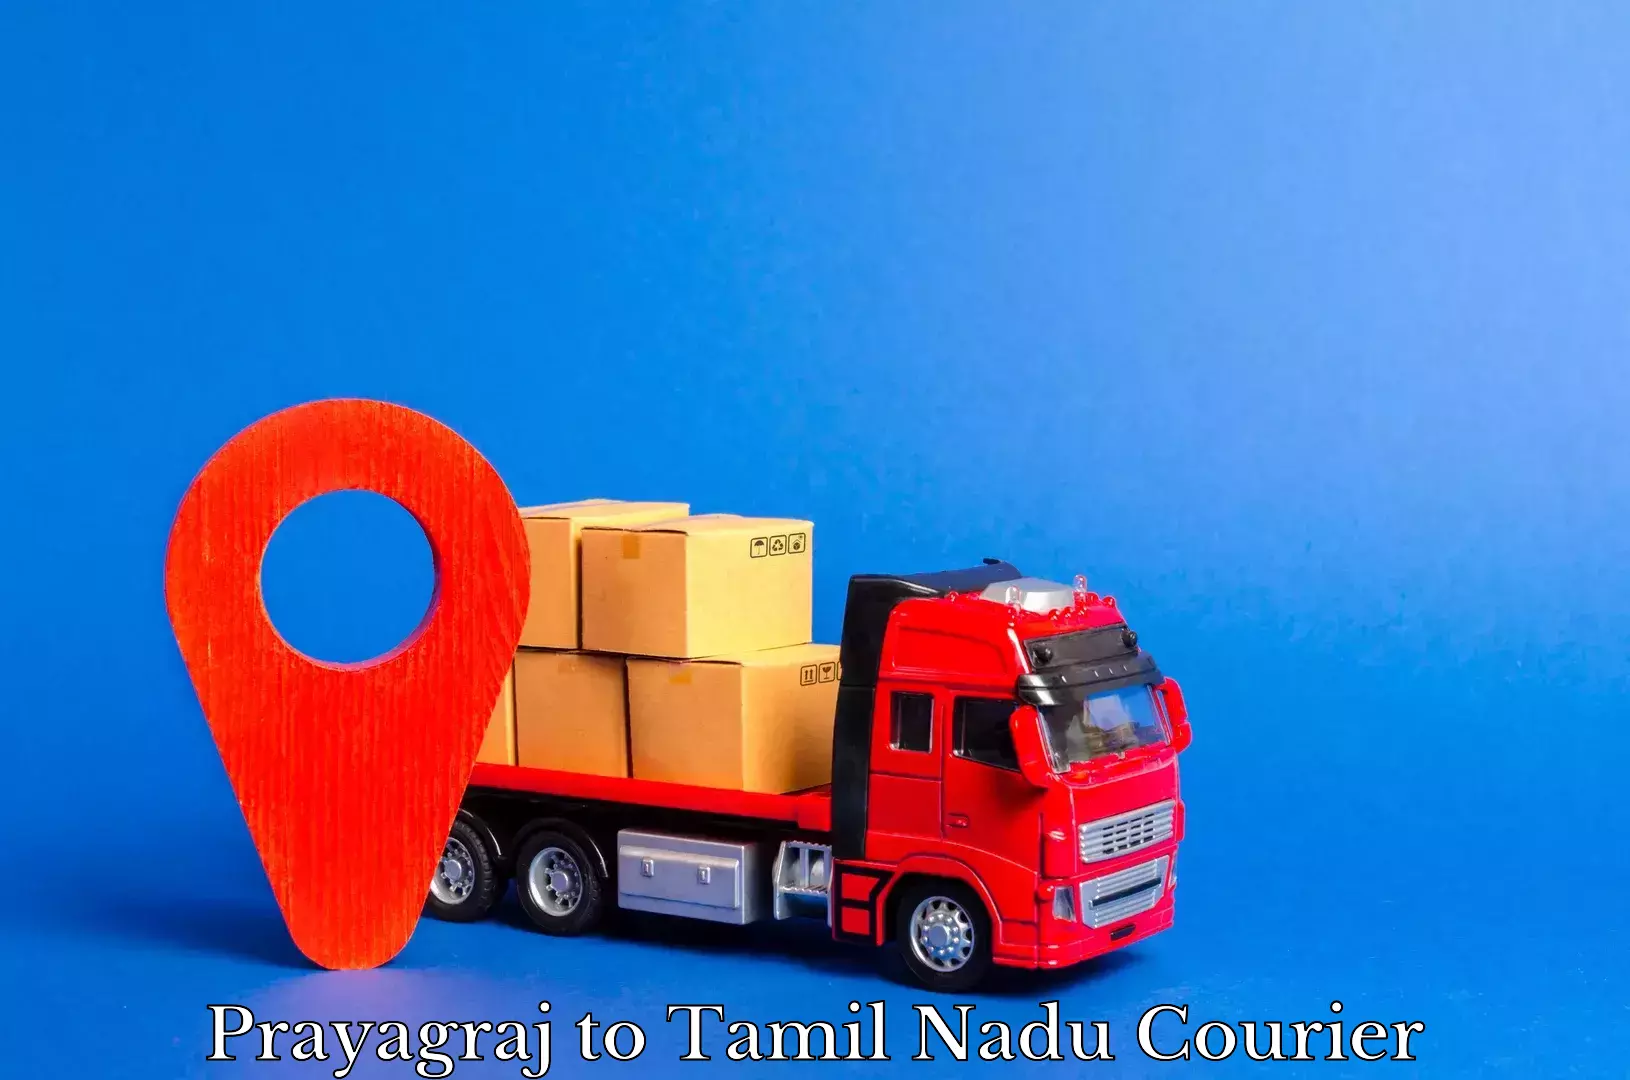 Courier insurance Prayagraj to Tamil Nadu